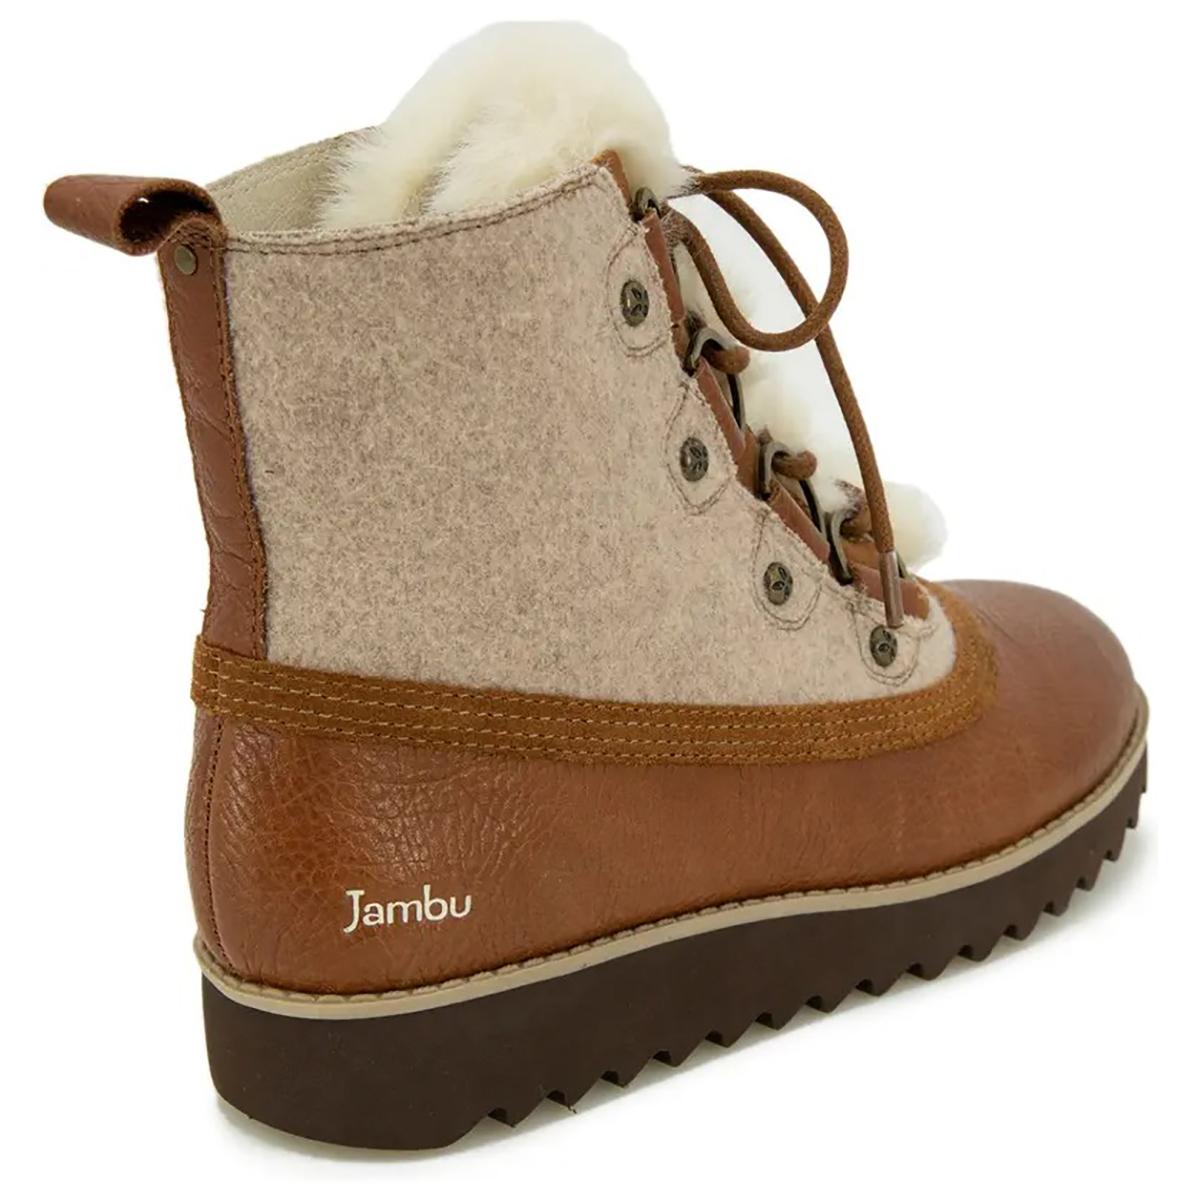 Jambu Turin Winter Boot - Women's